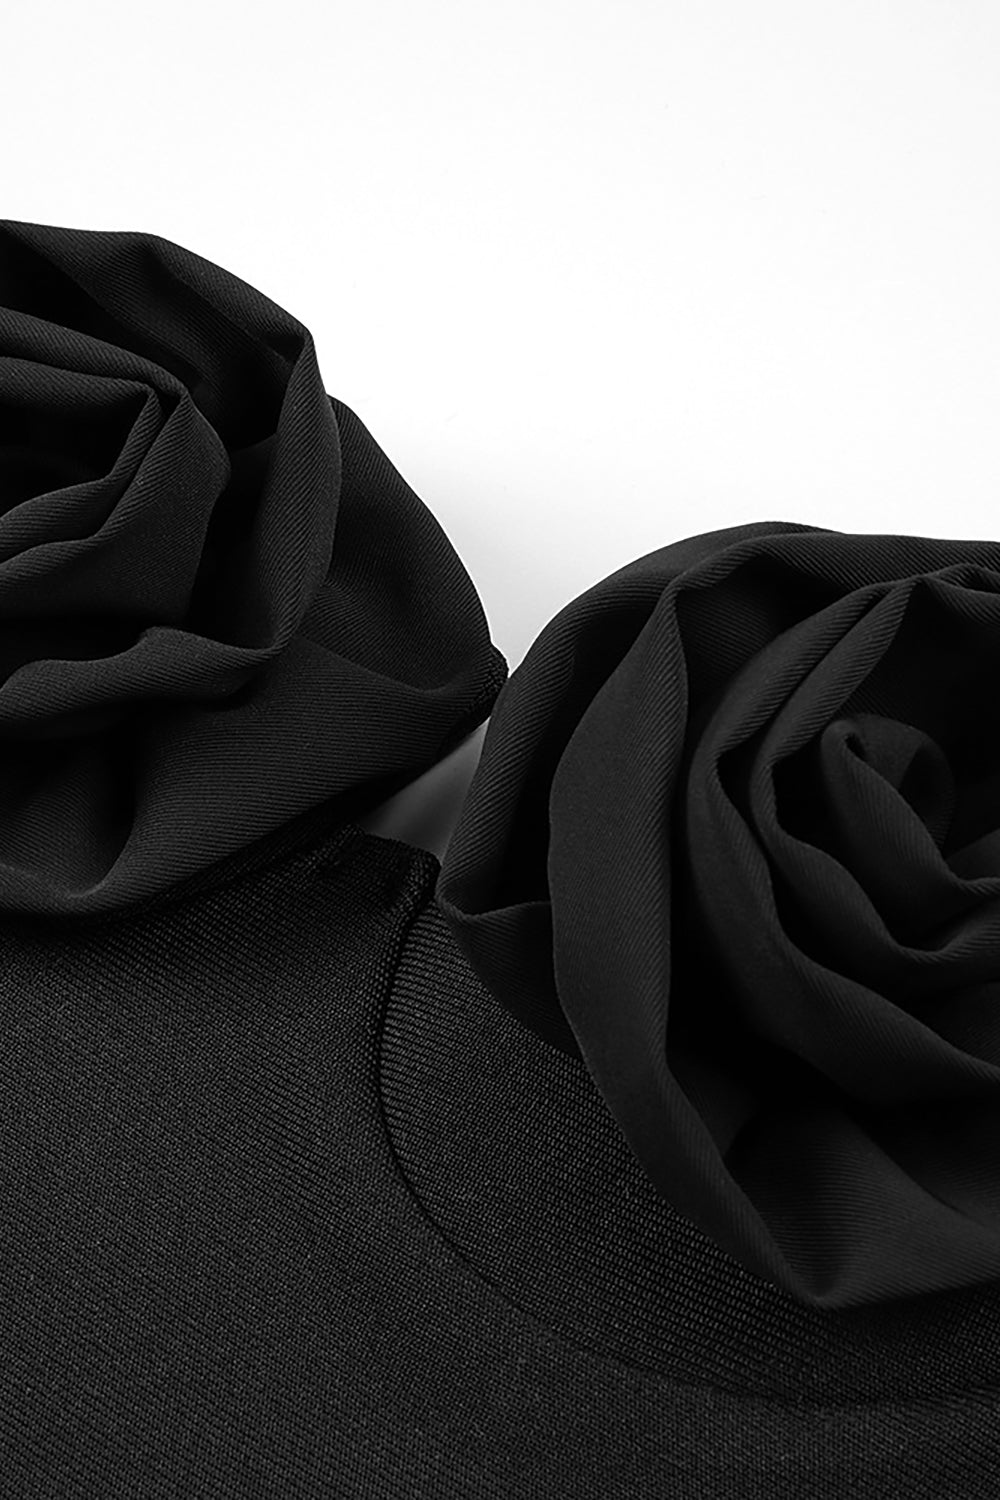 Haut bandage de style bustier avec appliques de fleurs en noir